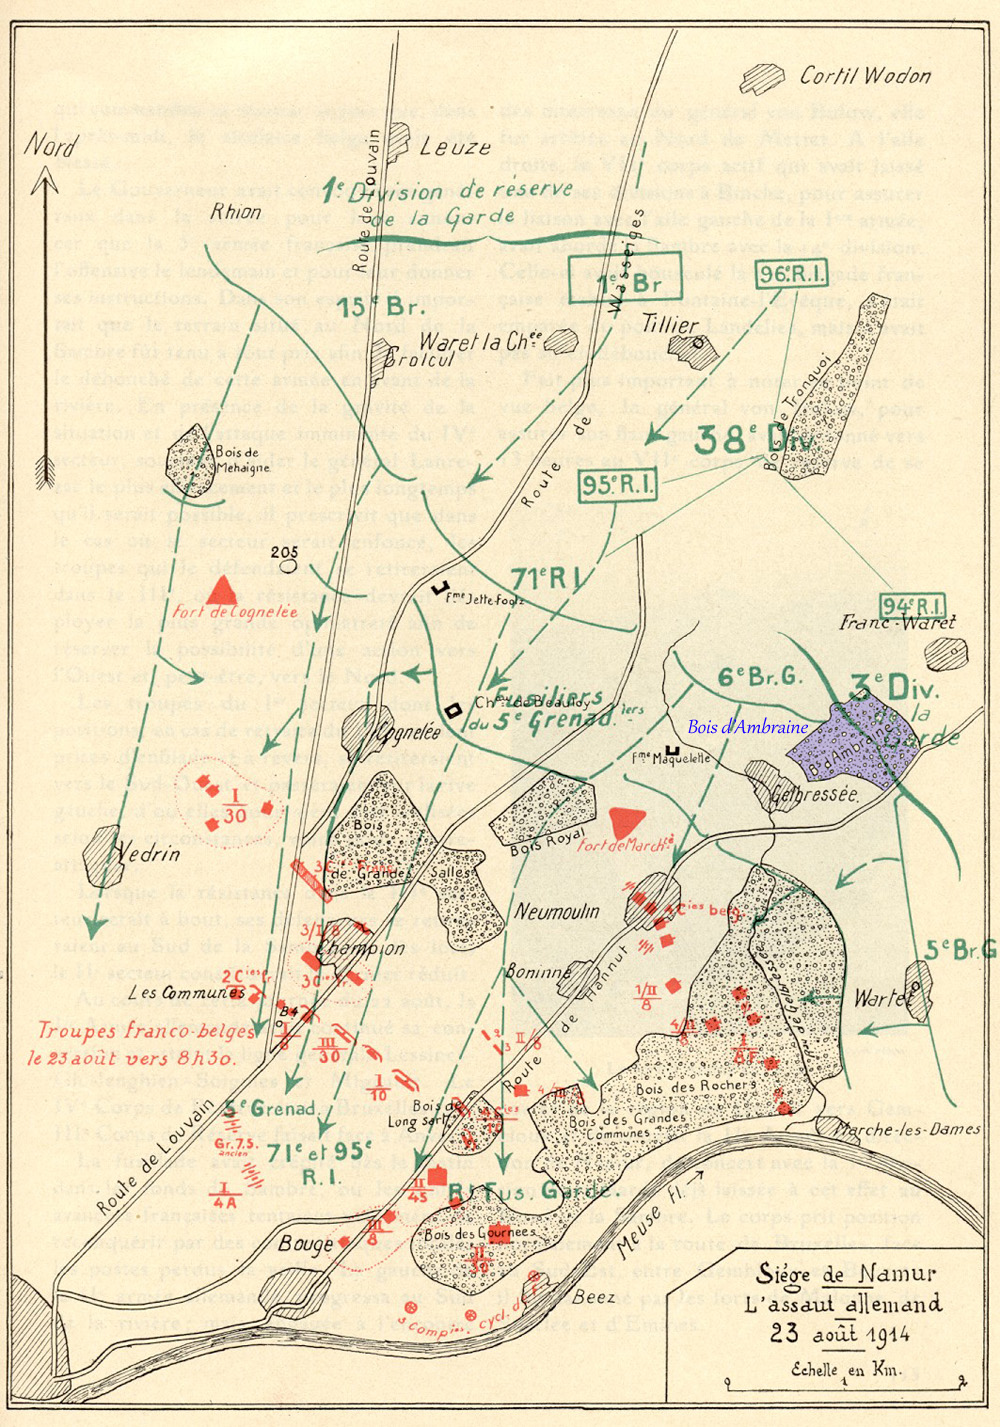 len plan du siège de Namur 23 aout 1914 bois ambraine